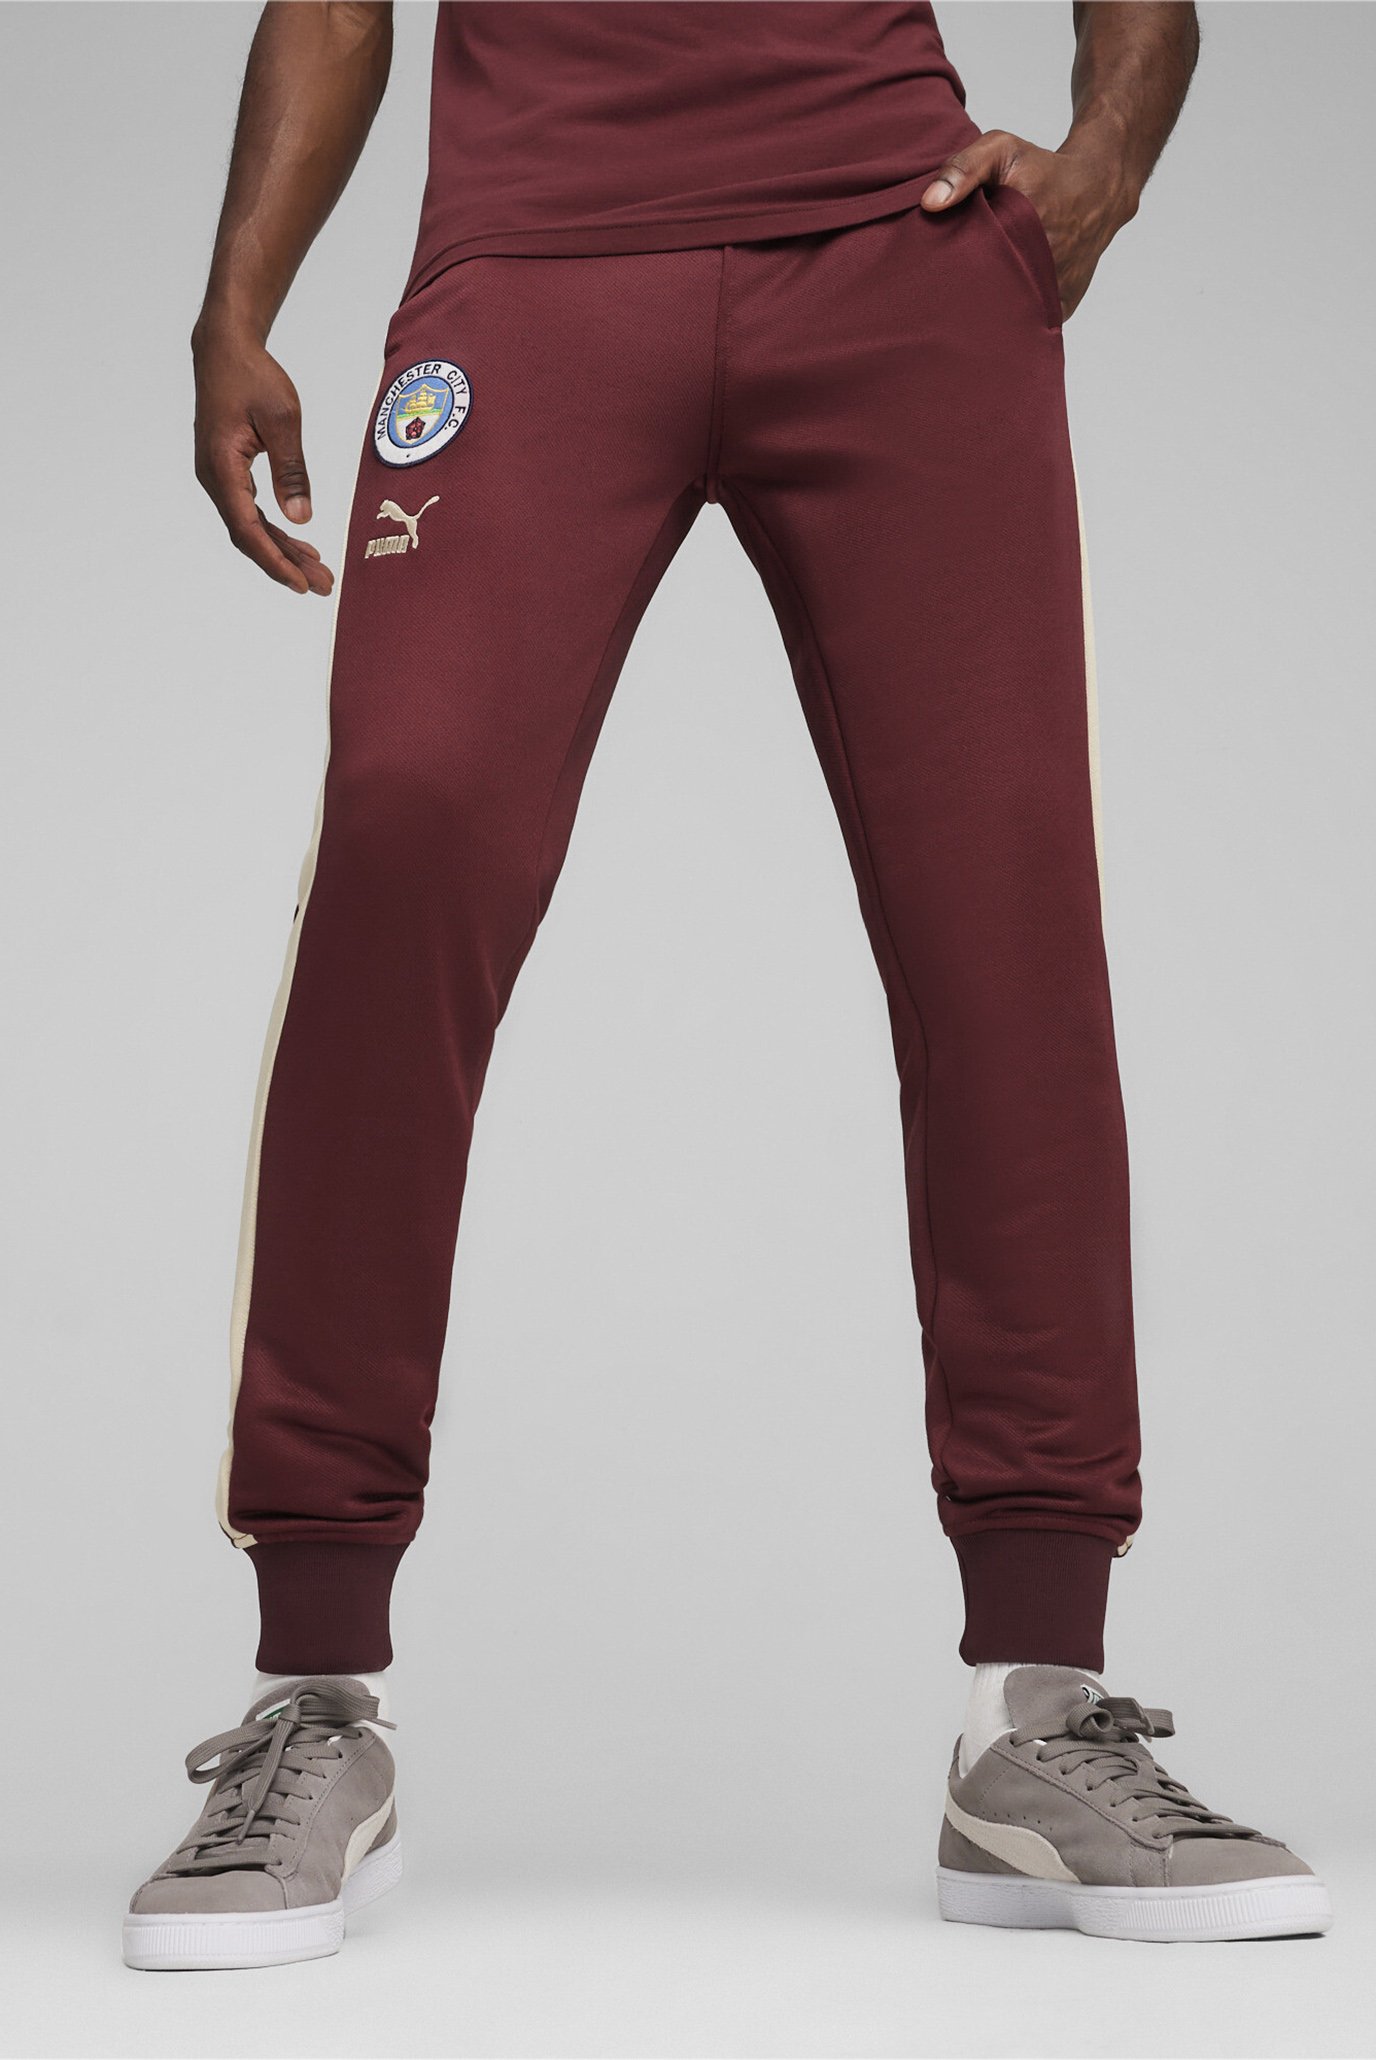 Мужские бордовые спортивные брюки Manchester City F.C. ftblHeritage T7 Track Pants Men 1